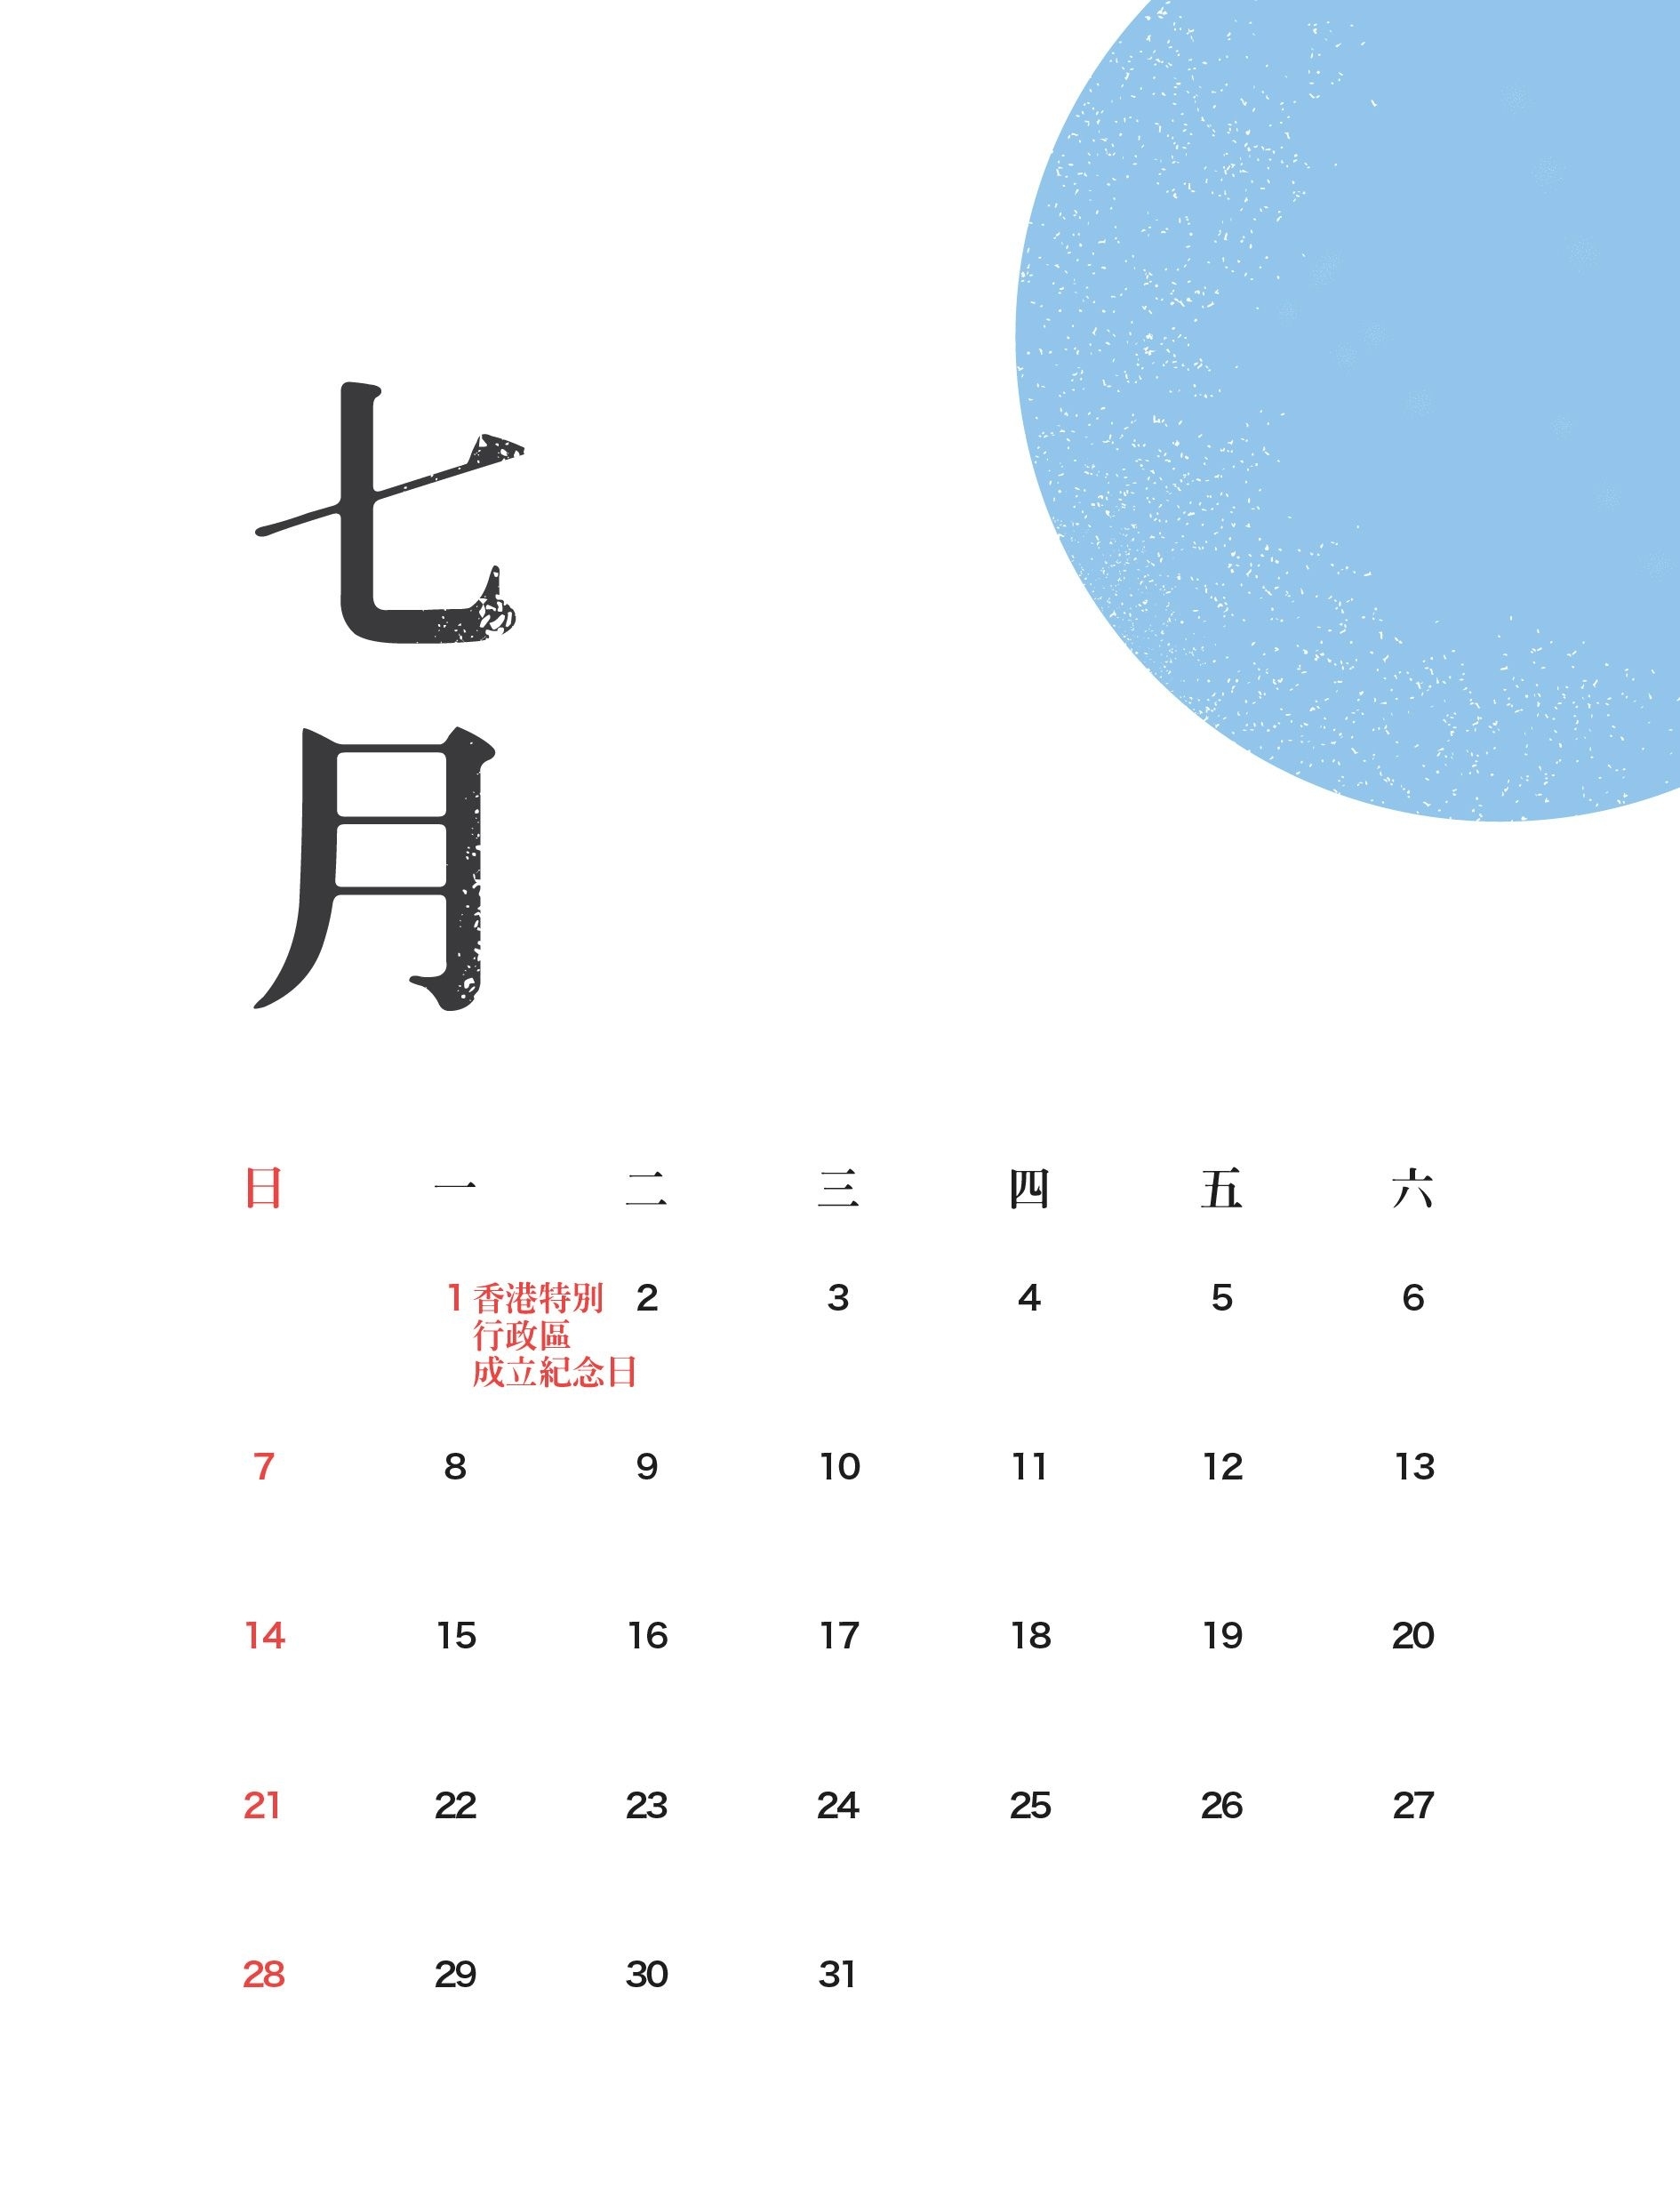 2019 Calendar Hong Kong Printable Free 7 | 2019 Calendar Impressive Free Printable Calendars Hong Kong